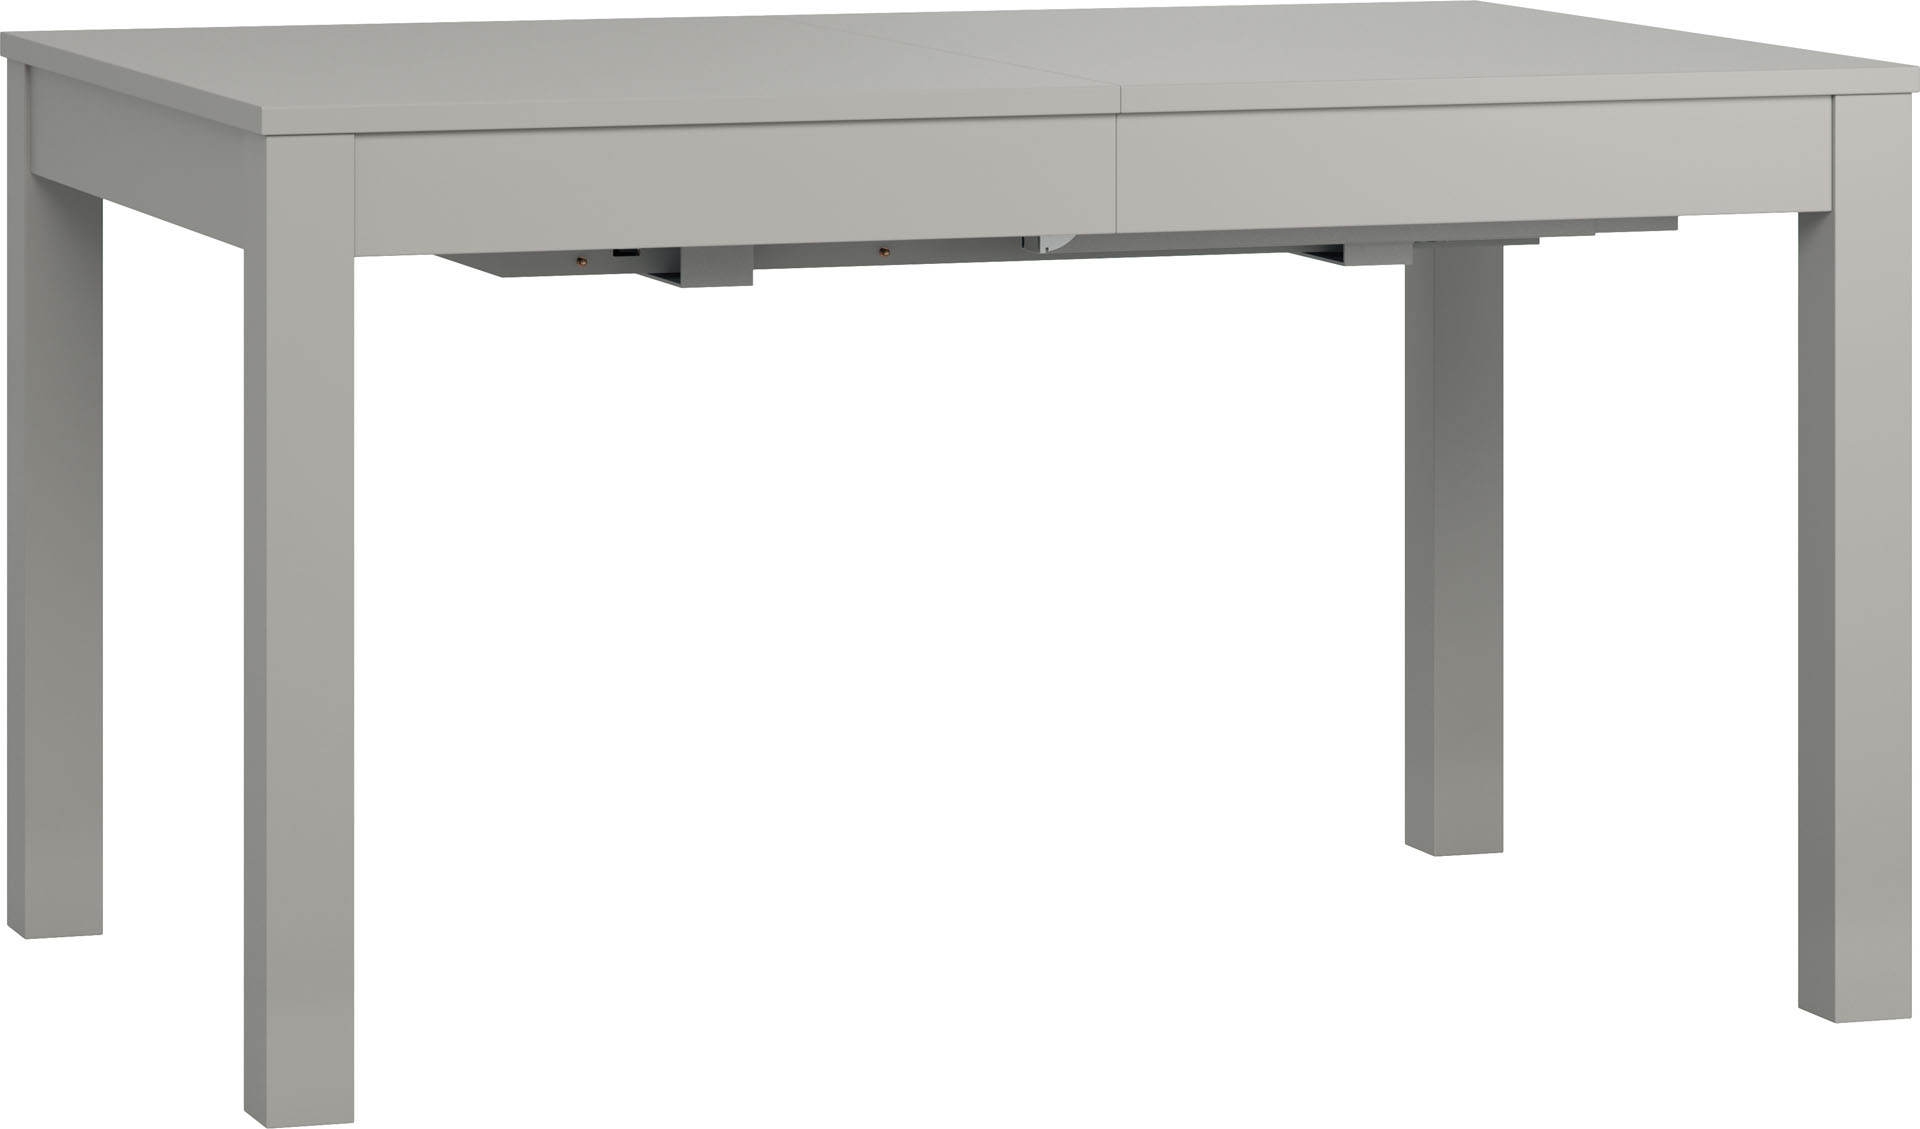 Столы кухонные 140. Стол simple Vox. Стол кухонный раскладной прямоугольный. Серый стол. Стол прямоугольный раздвижной.